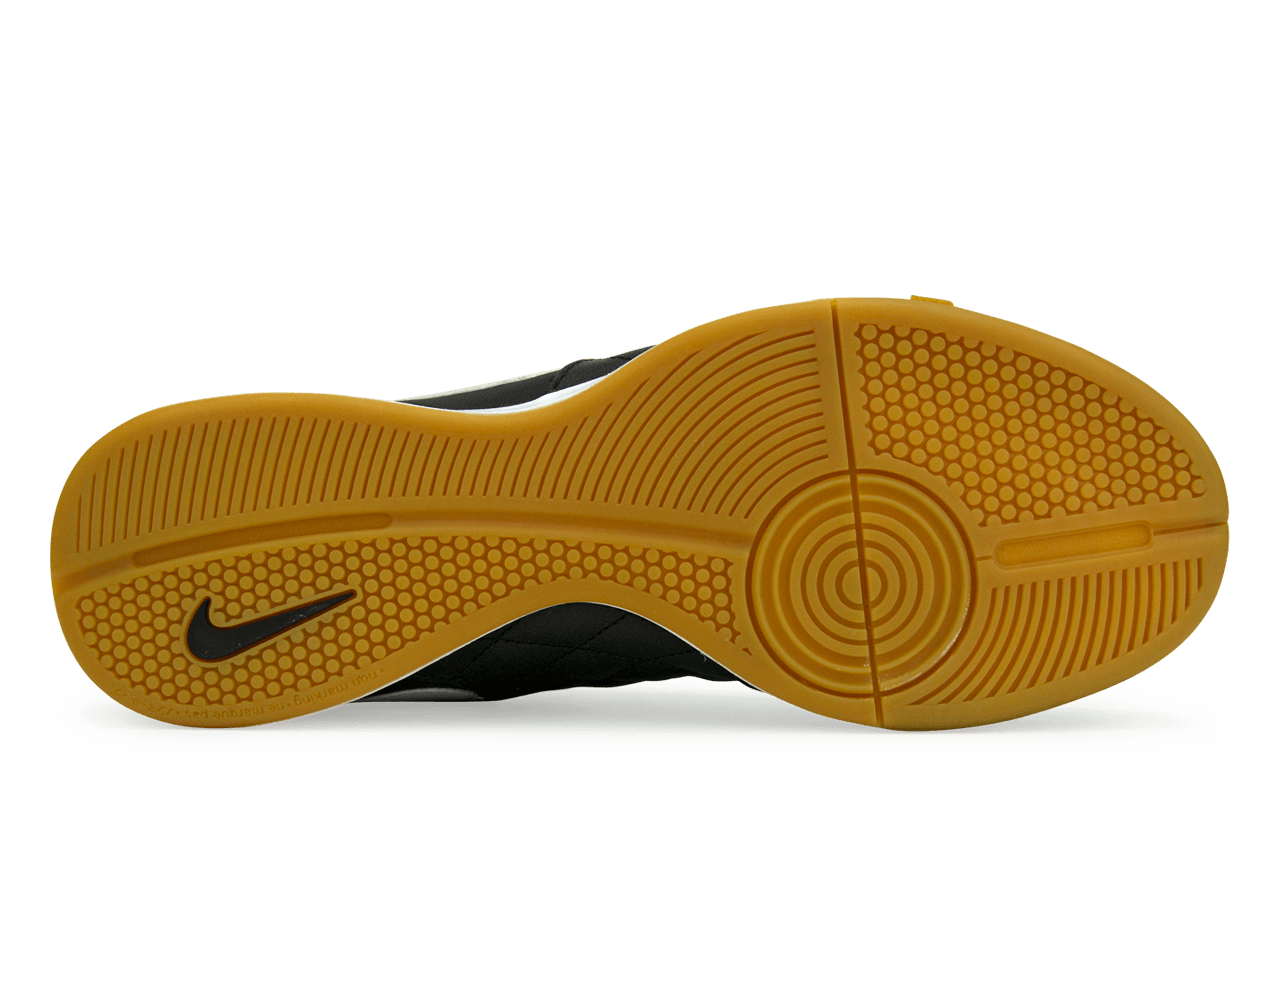 Nike Men's Tiempo Legend 7 Academy 10R Indoor Soccer Shoes Black/Lit Orewood Brown/Metallic Gold